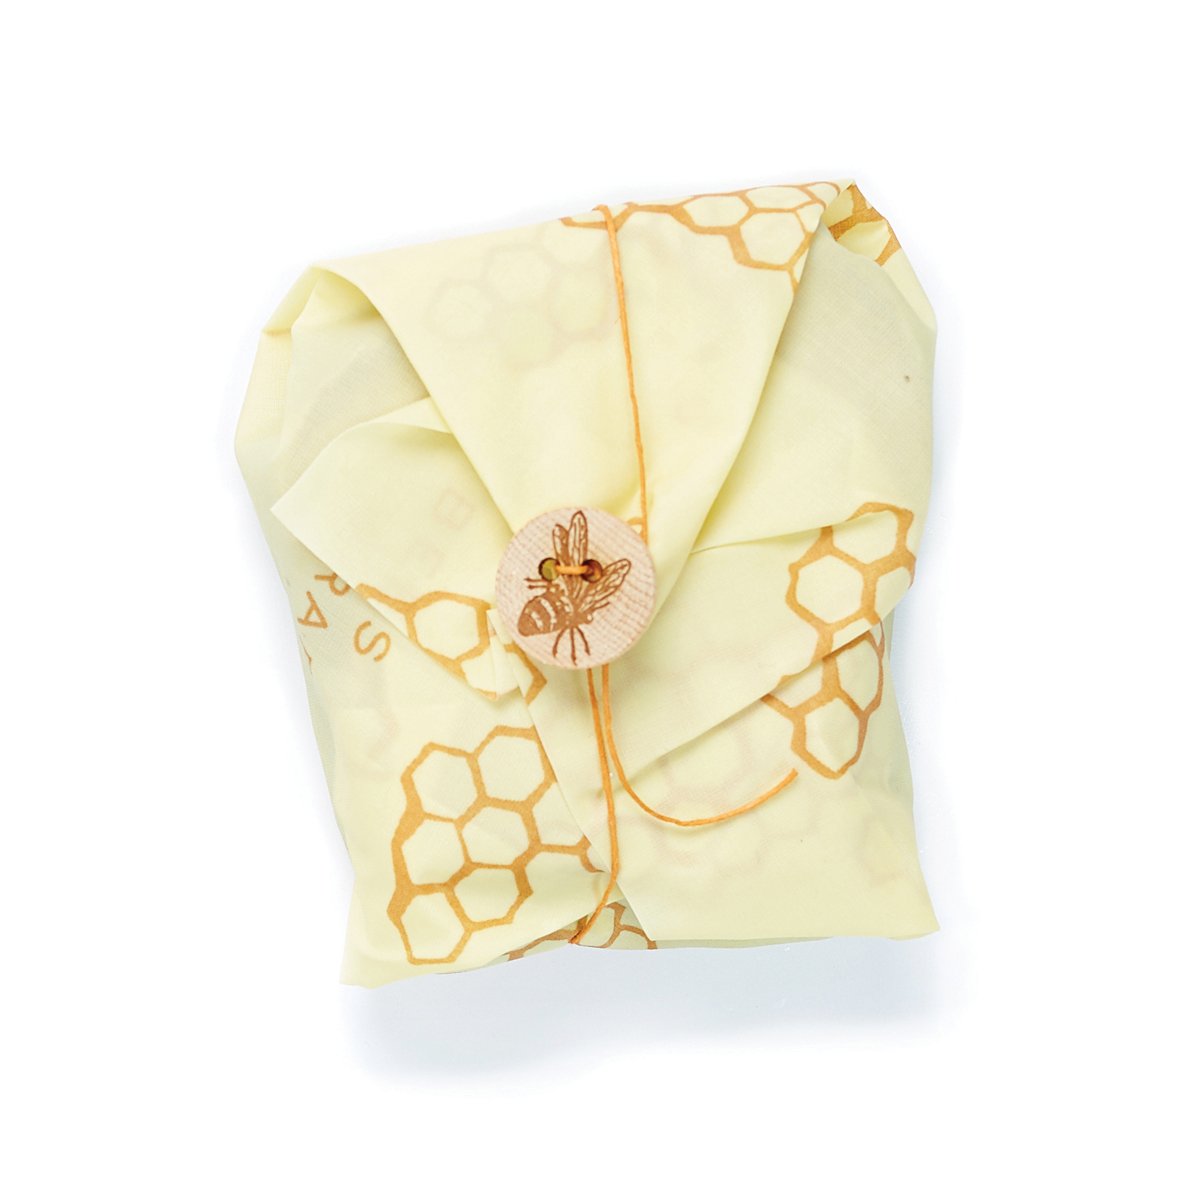 Bee's Wrap Sandwich Wrap Single